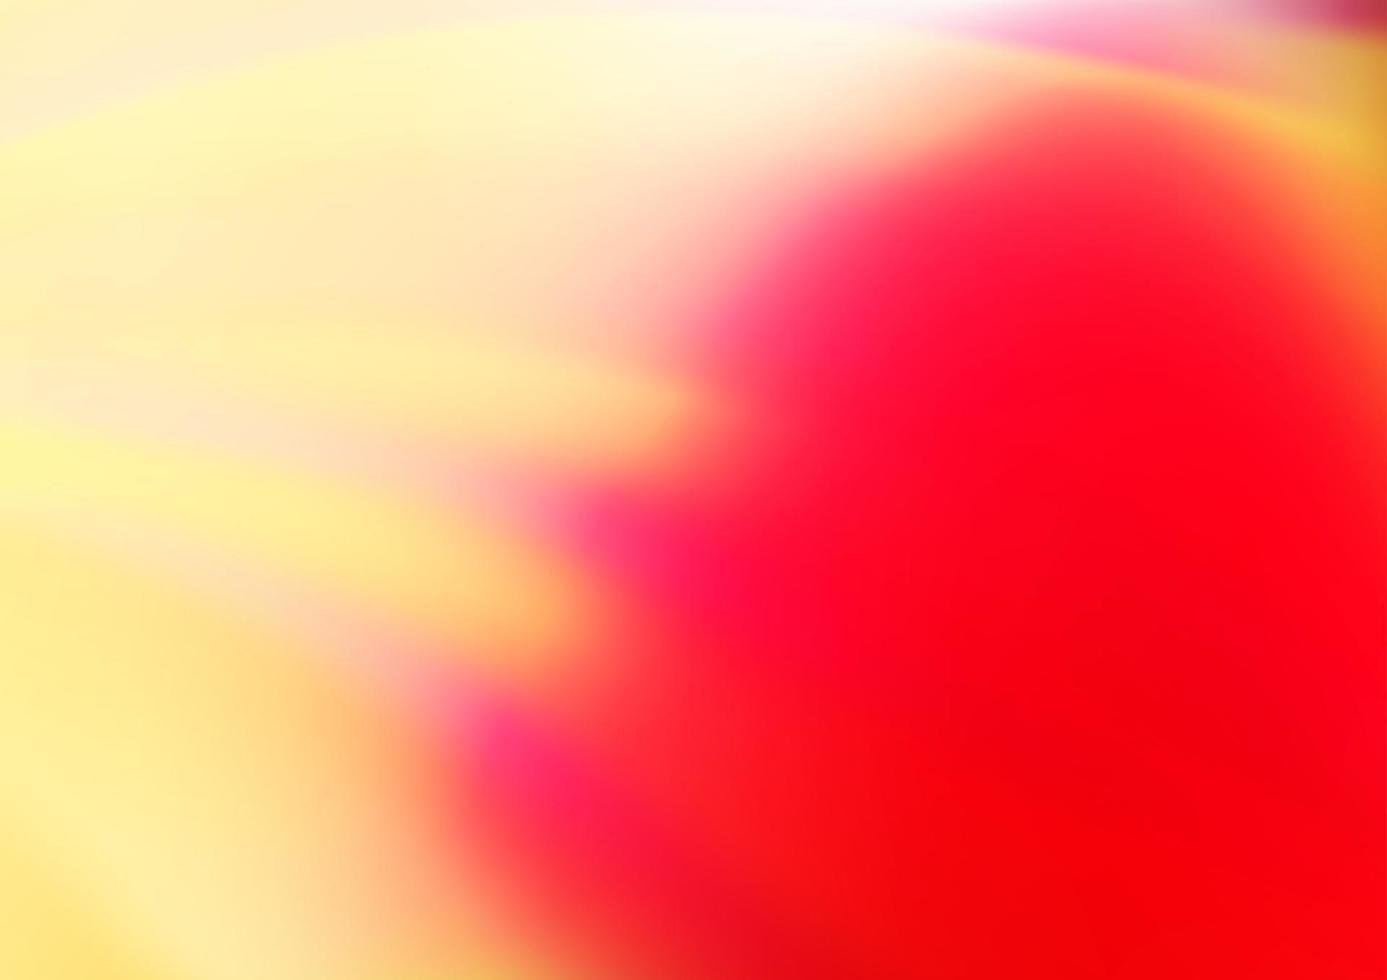 sfondo astratto vettoriale rosso chiaro, giallo.